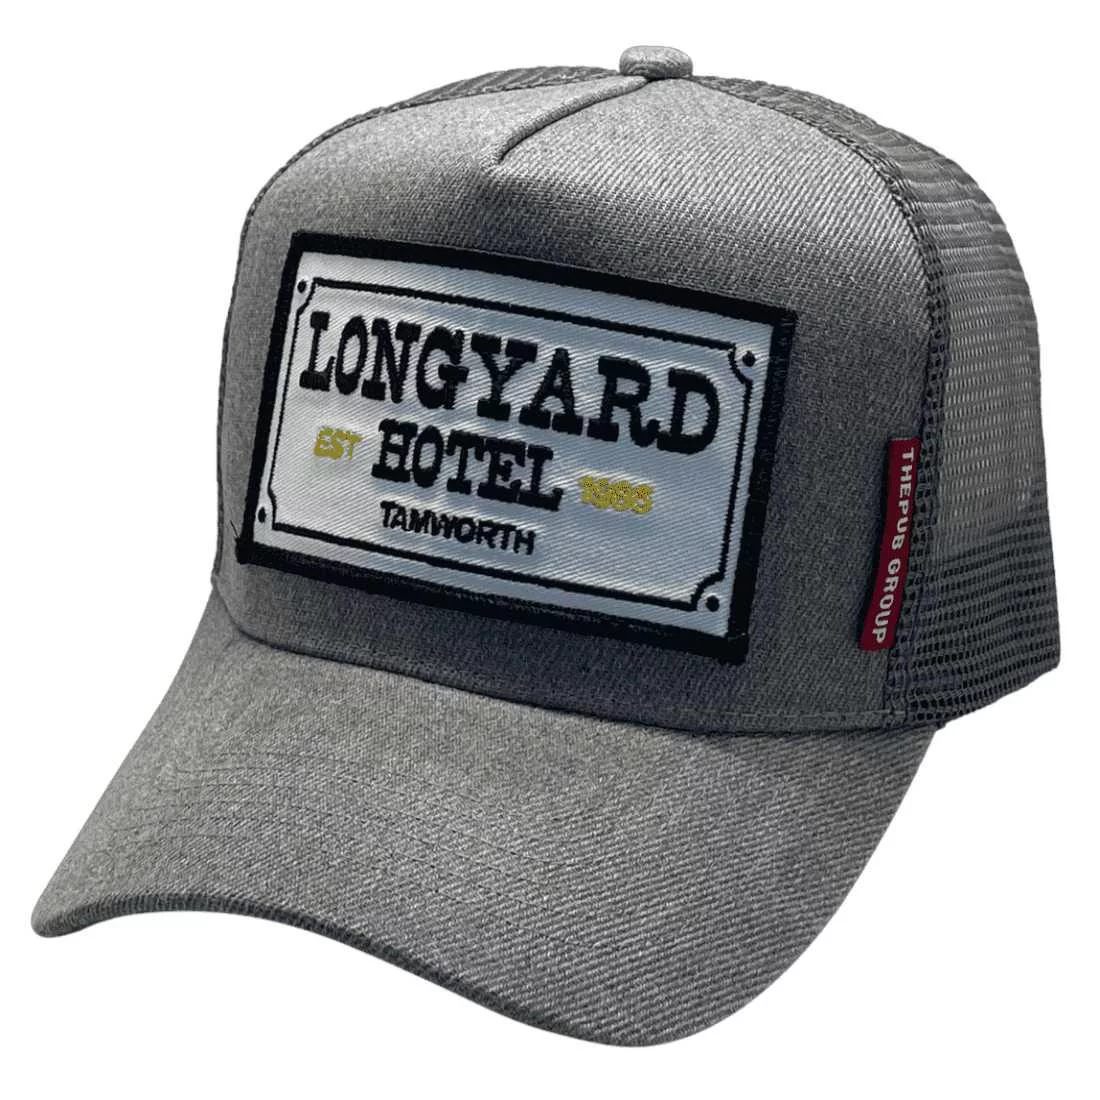 Longyard Hotel Tamworth HP Basic Aussie Trucker Hat Acrylic Grey Fleck